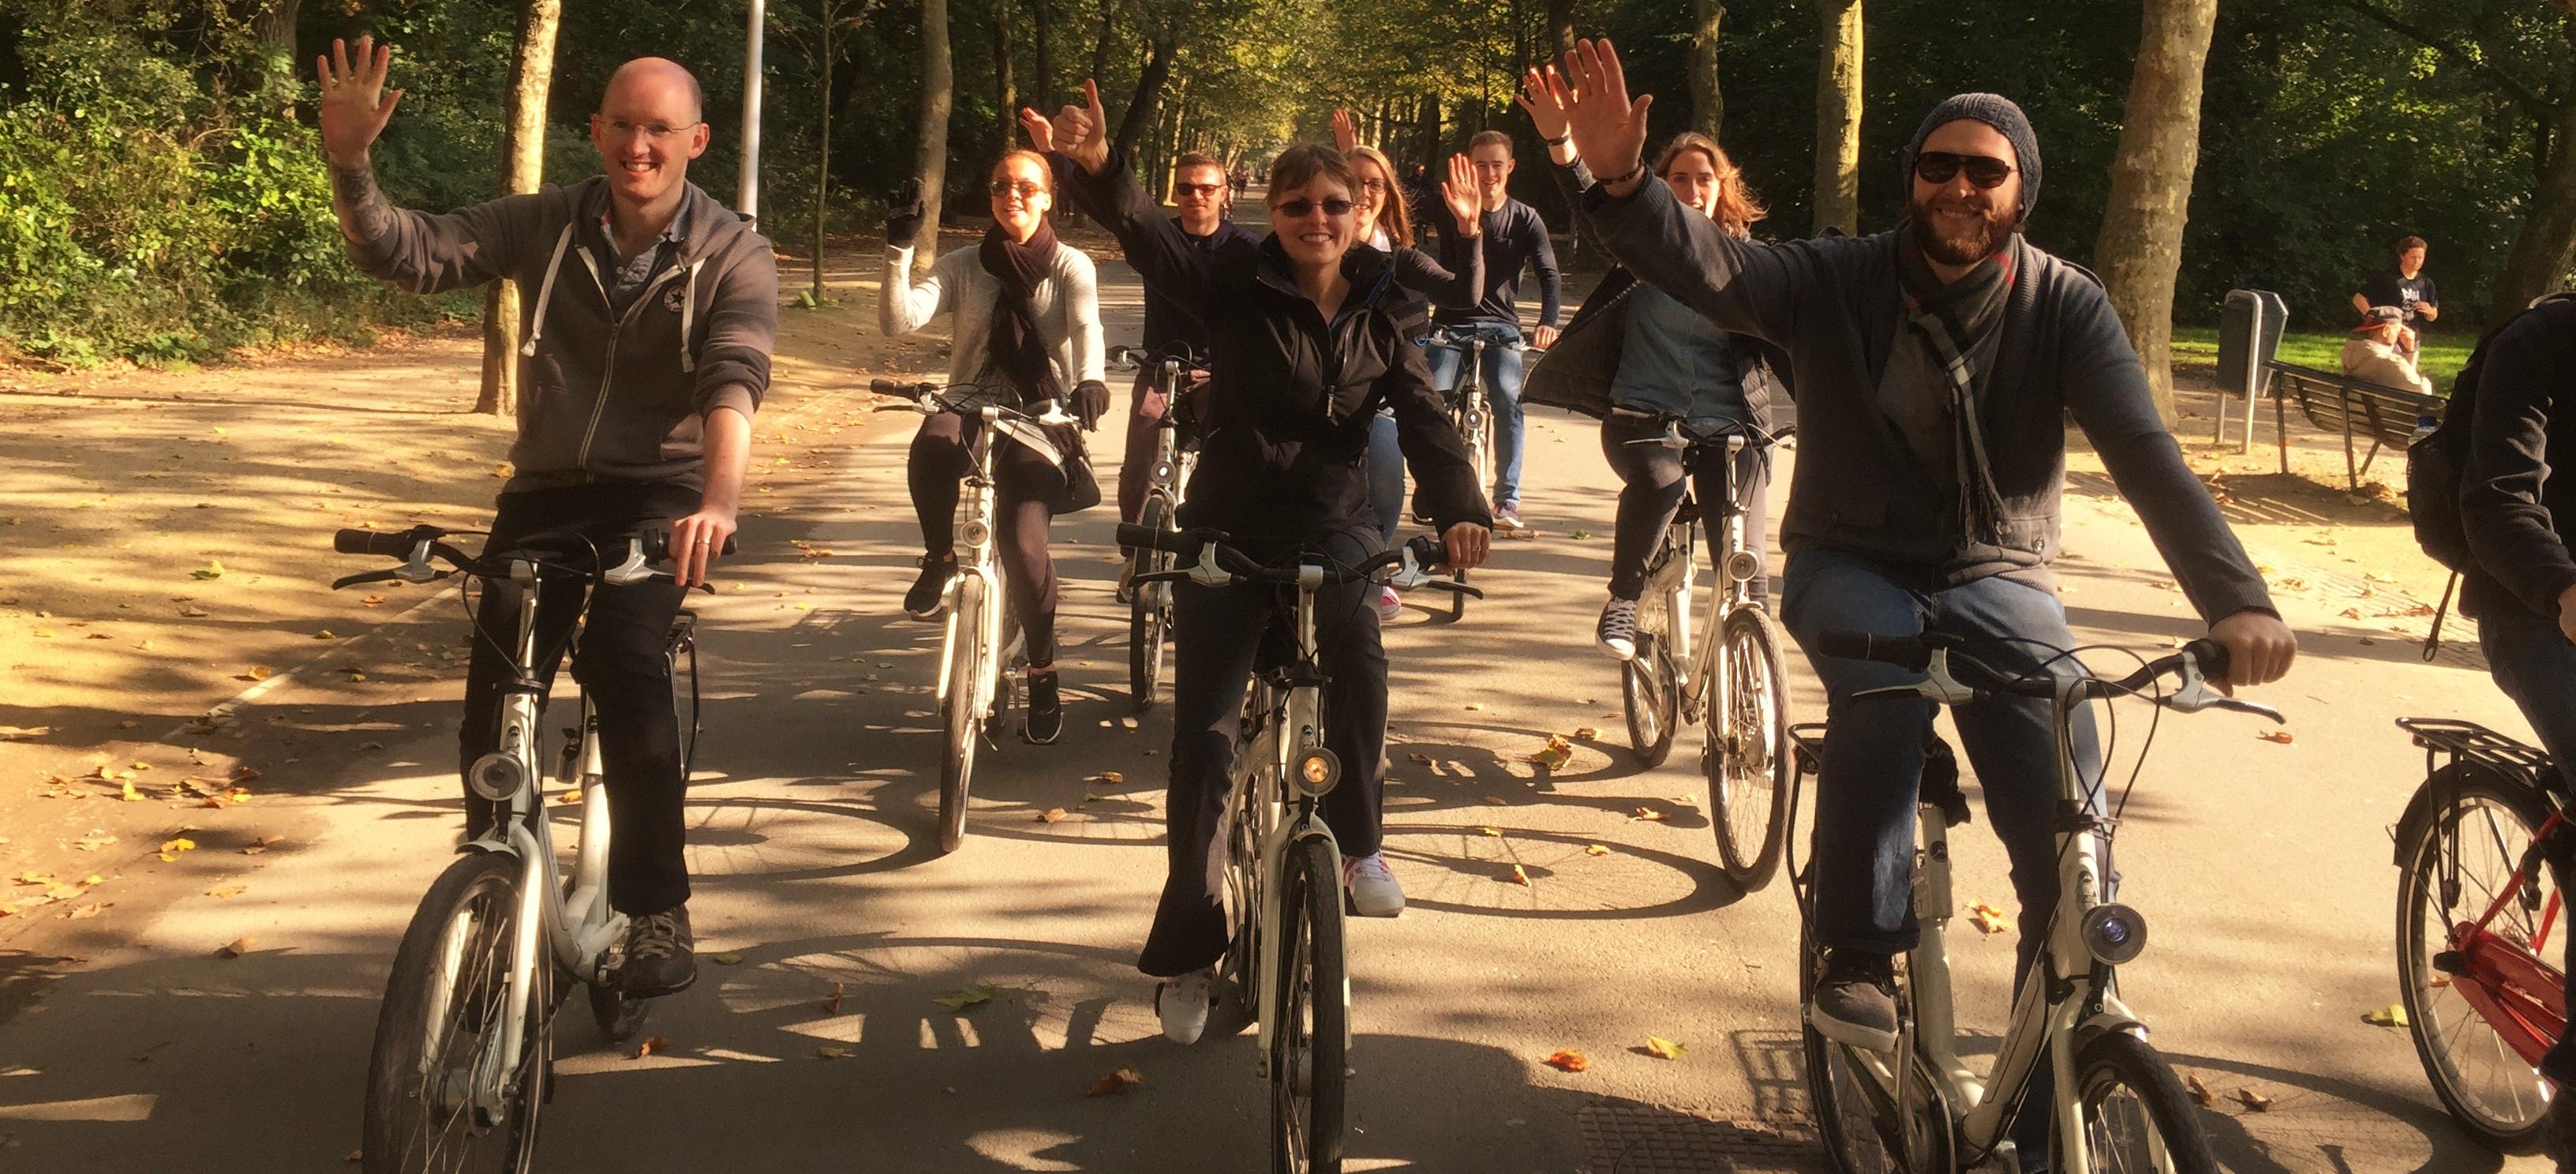 Фото We Bike Amsterdam - обзорная экскурсия на велосипедах